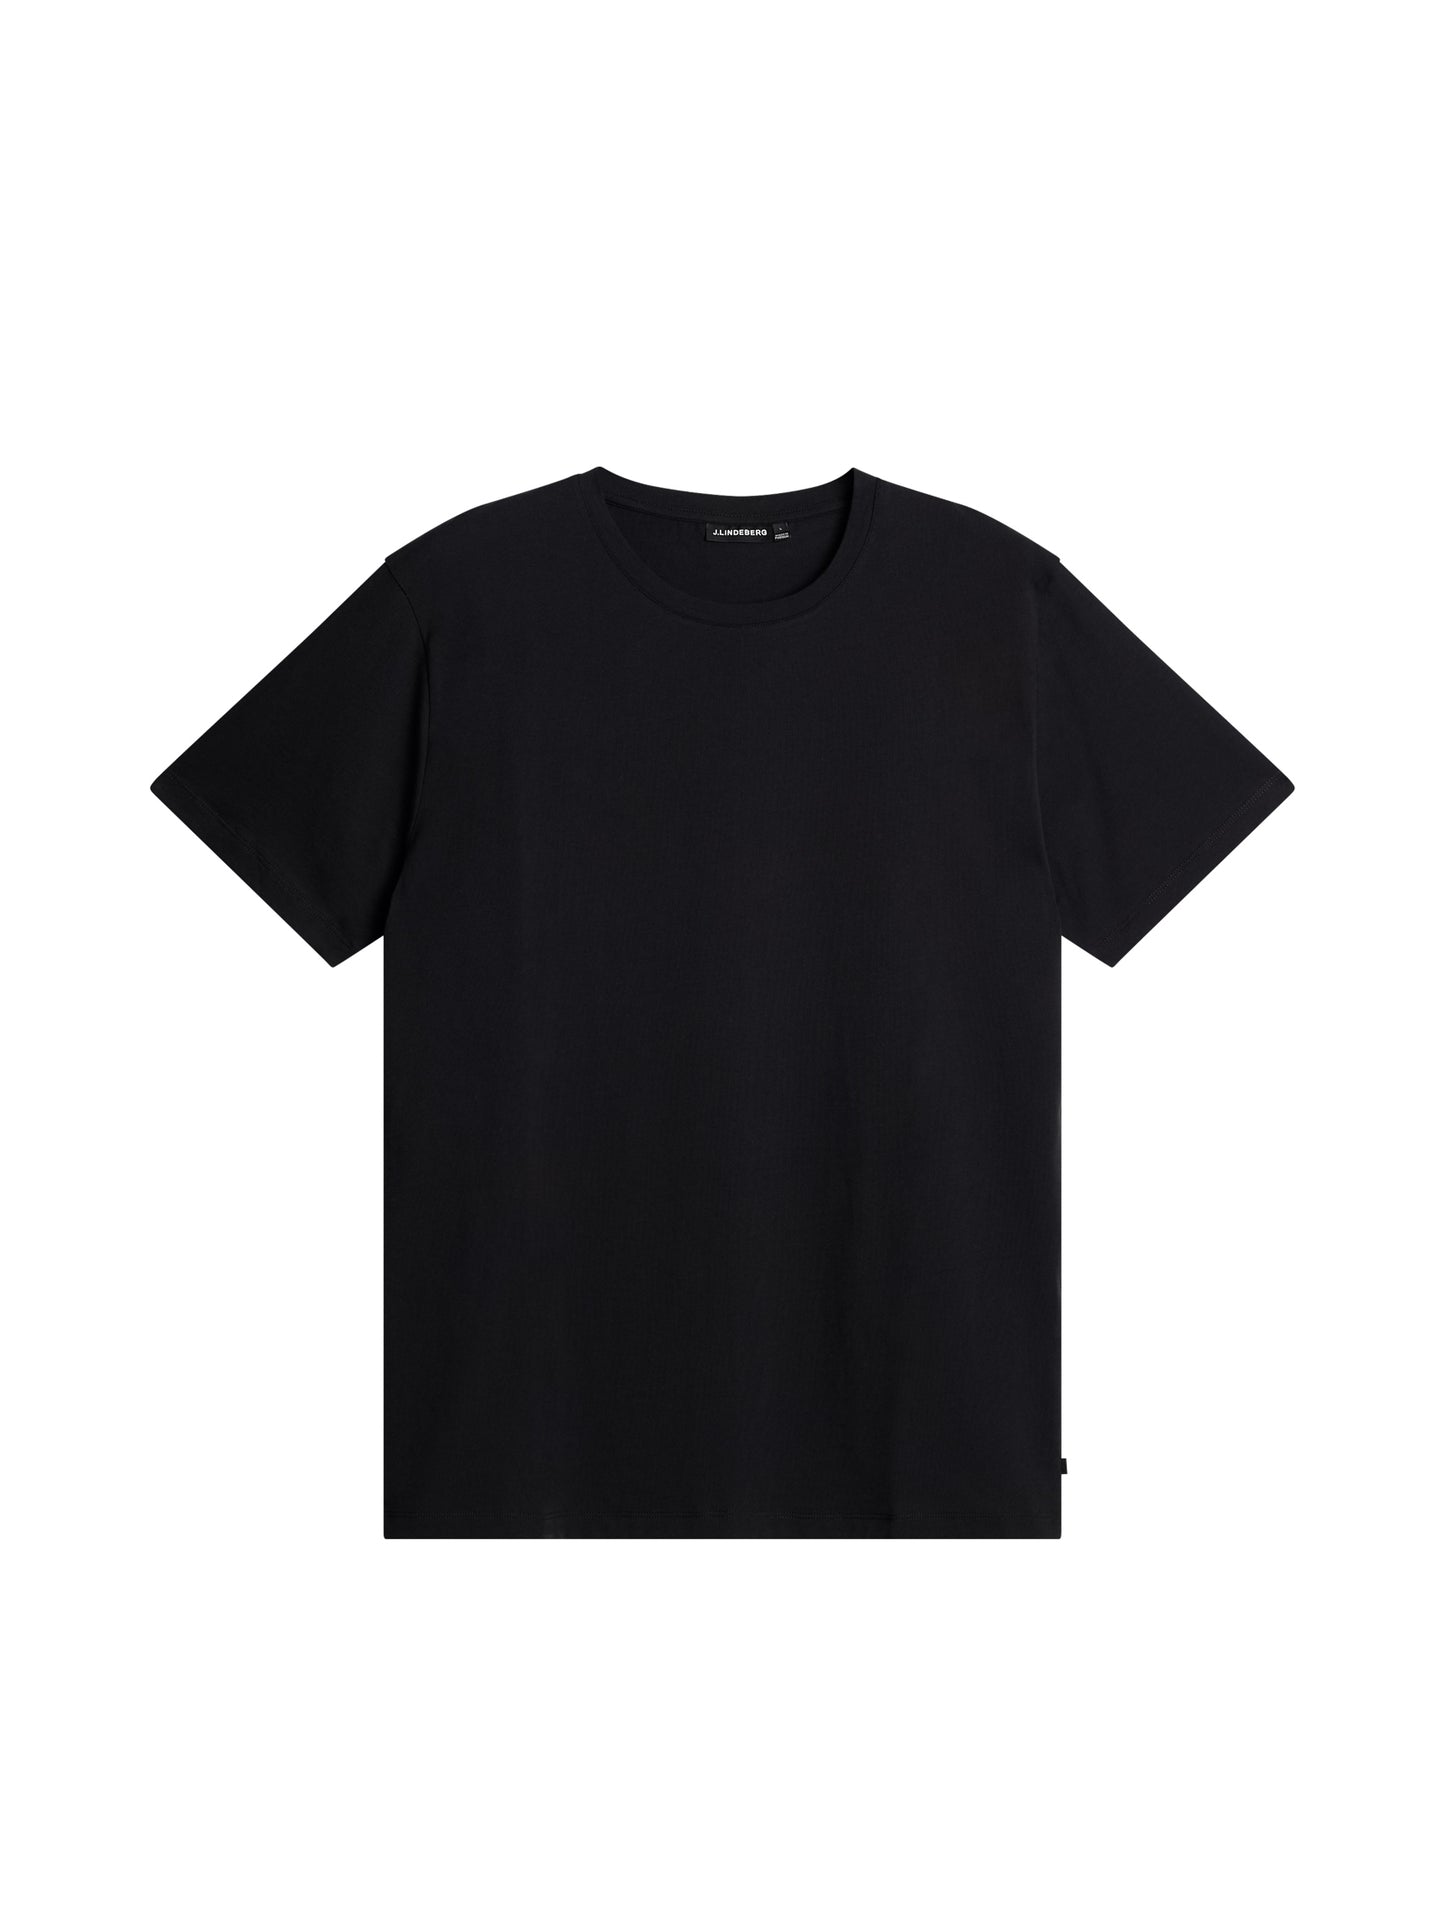 Sid Basic T-Shirt / Black